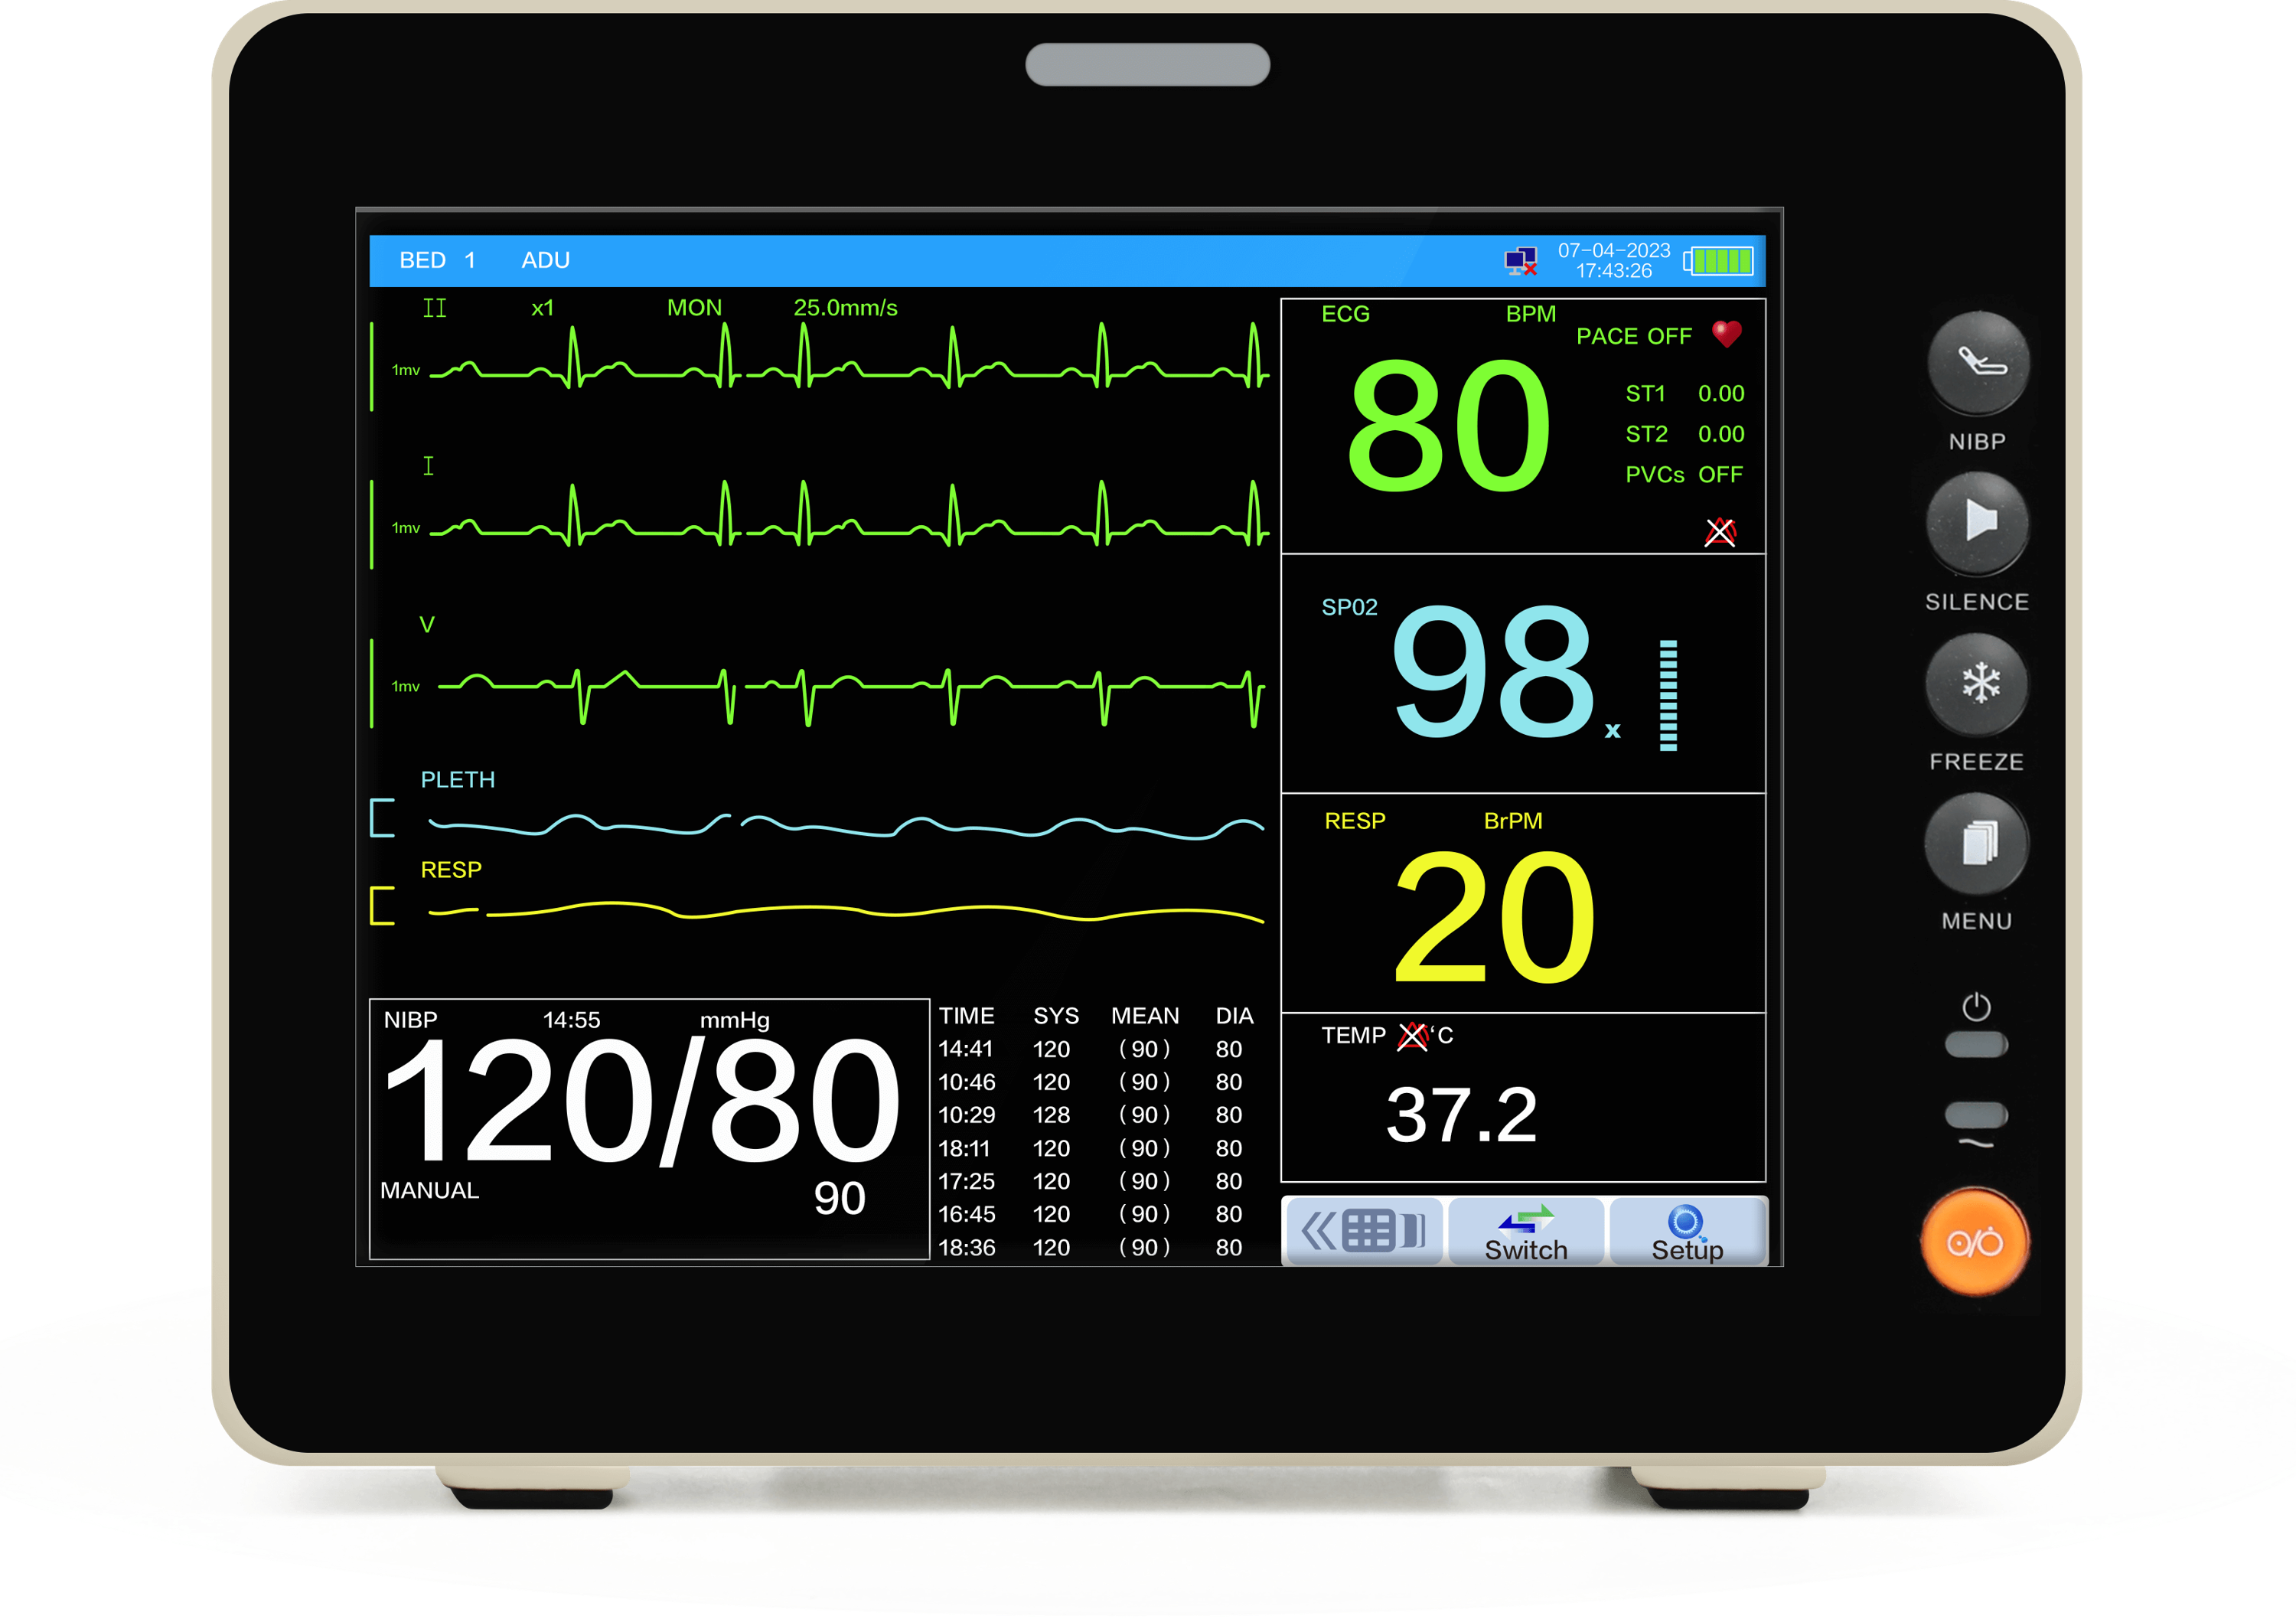 Wellue monitor paziente da 8 pollici con touchscreen